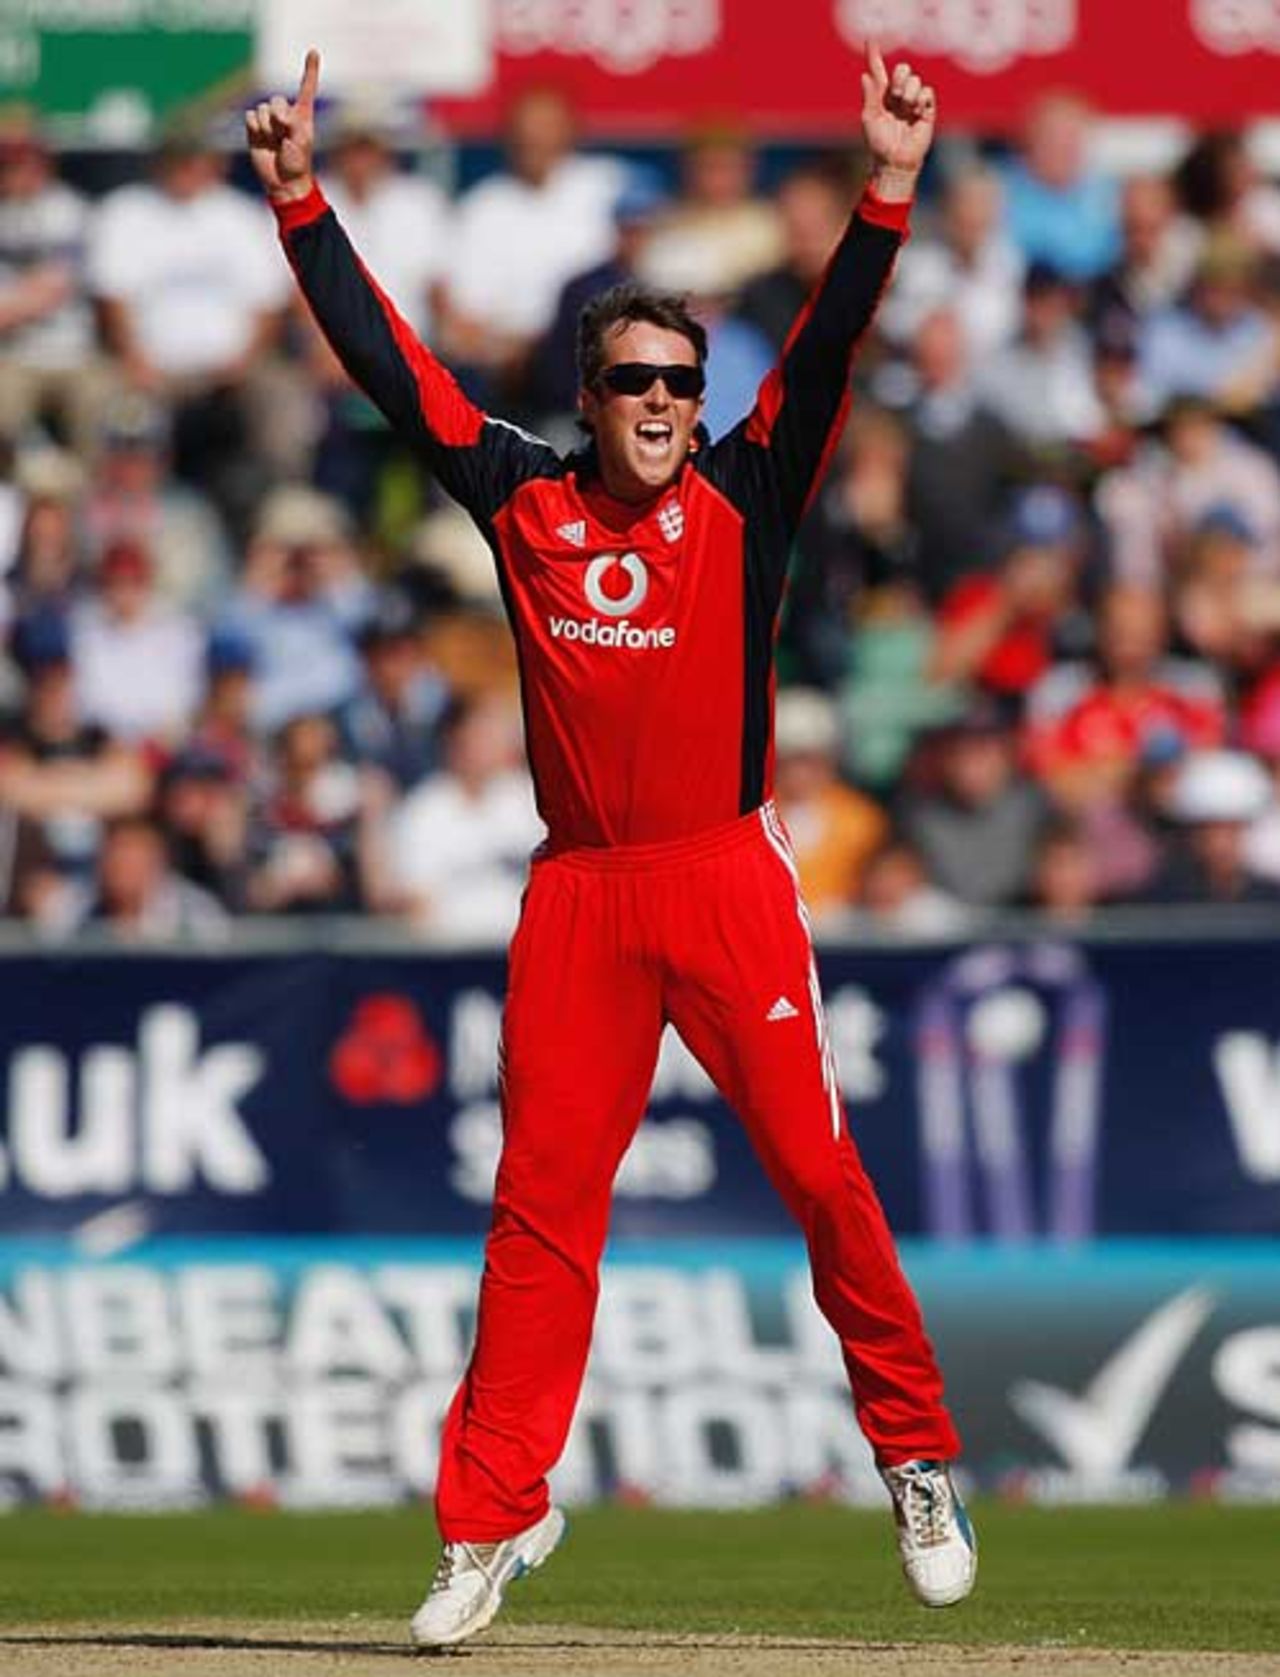 Graeme Swann took a career-best 5 for 28, England v Australia, 7th ODI, Chester-le-Street, September 20, 2009